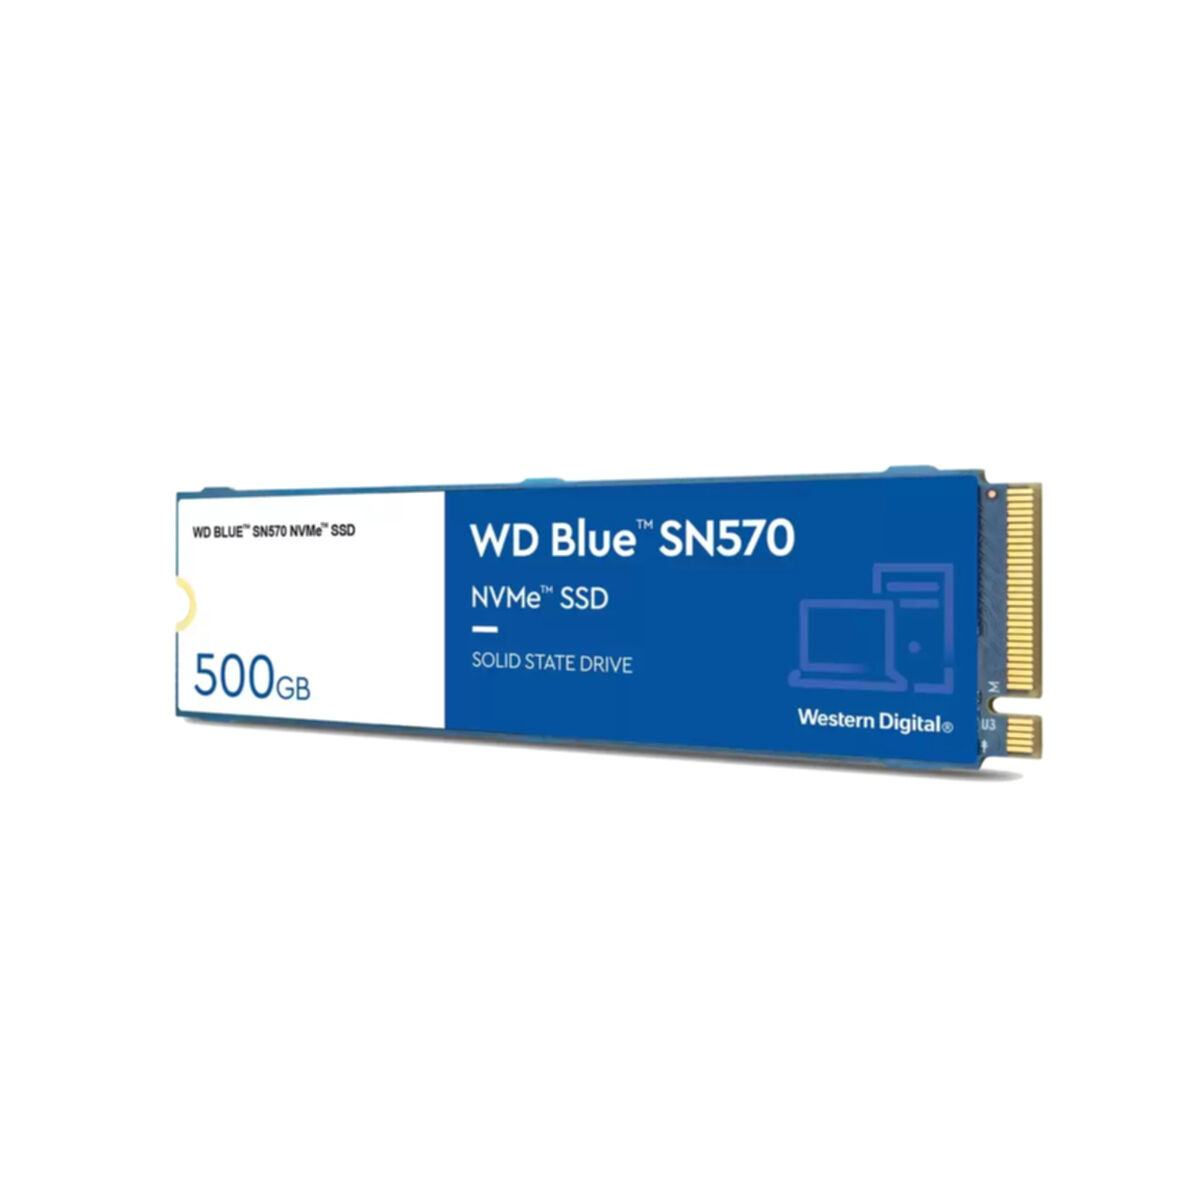 WESTERN DIGITAL WD Blue SN570, GB, SSD, 500 intern